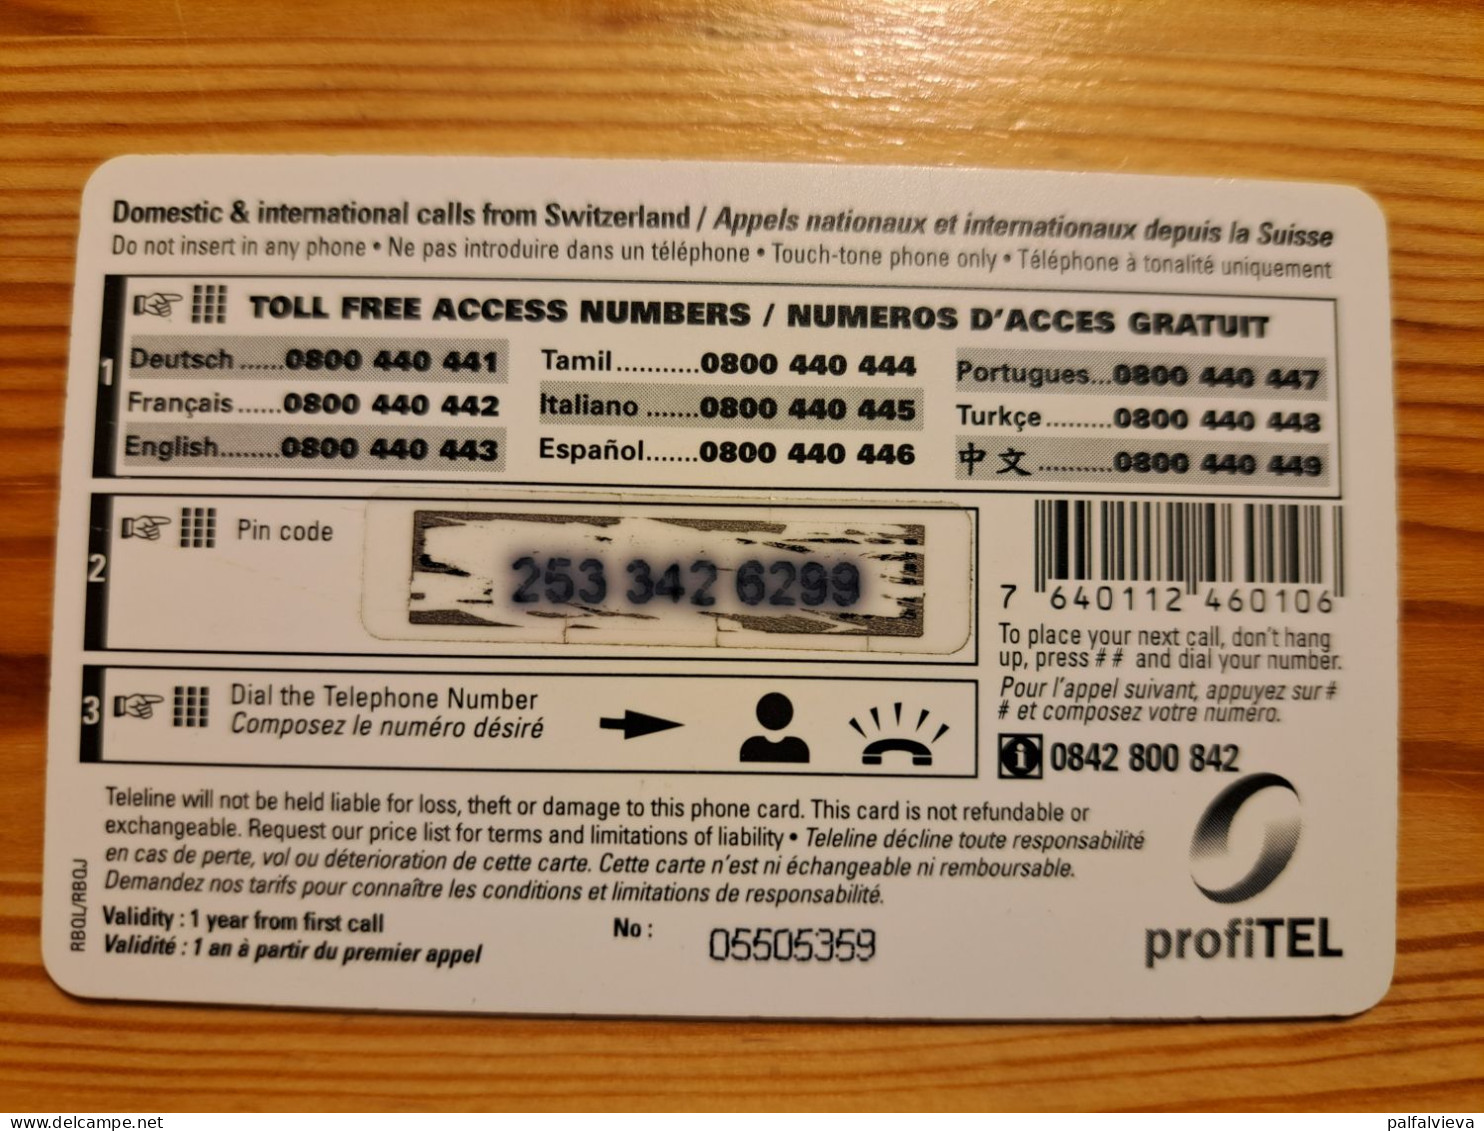 Prepaid Phonecard Switzerland, Teleline - Airplane - Suisse